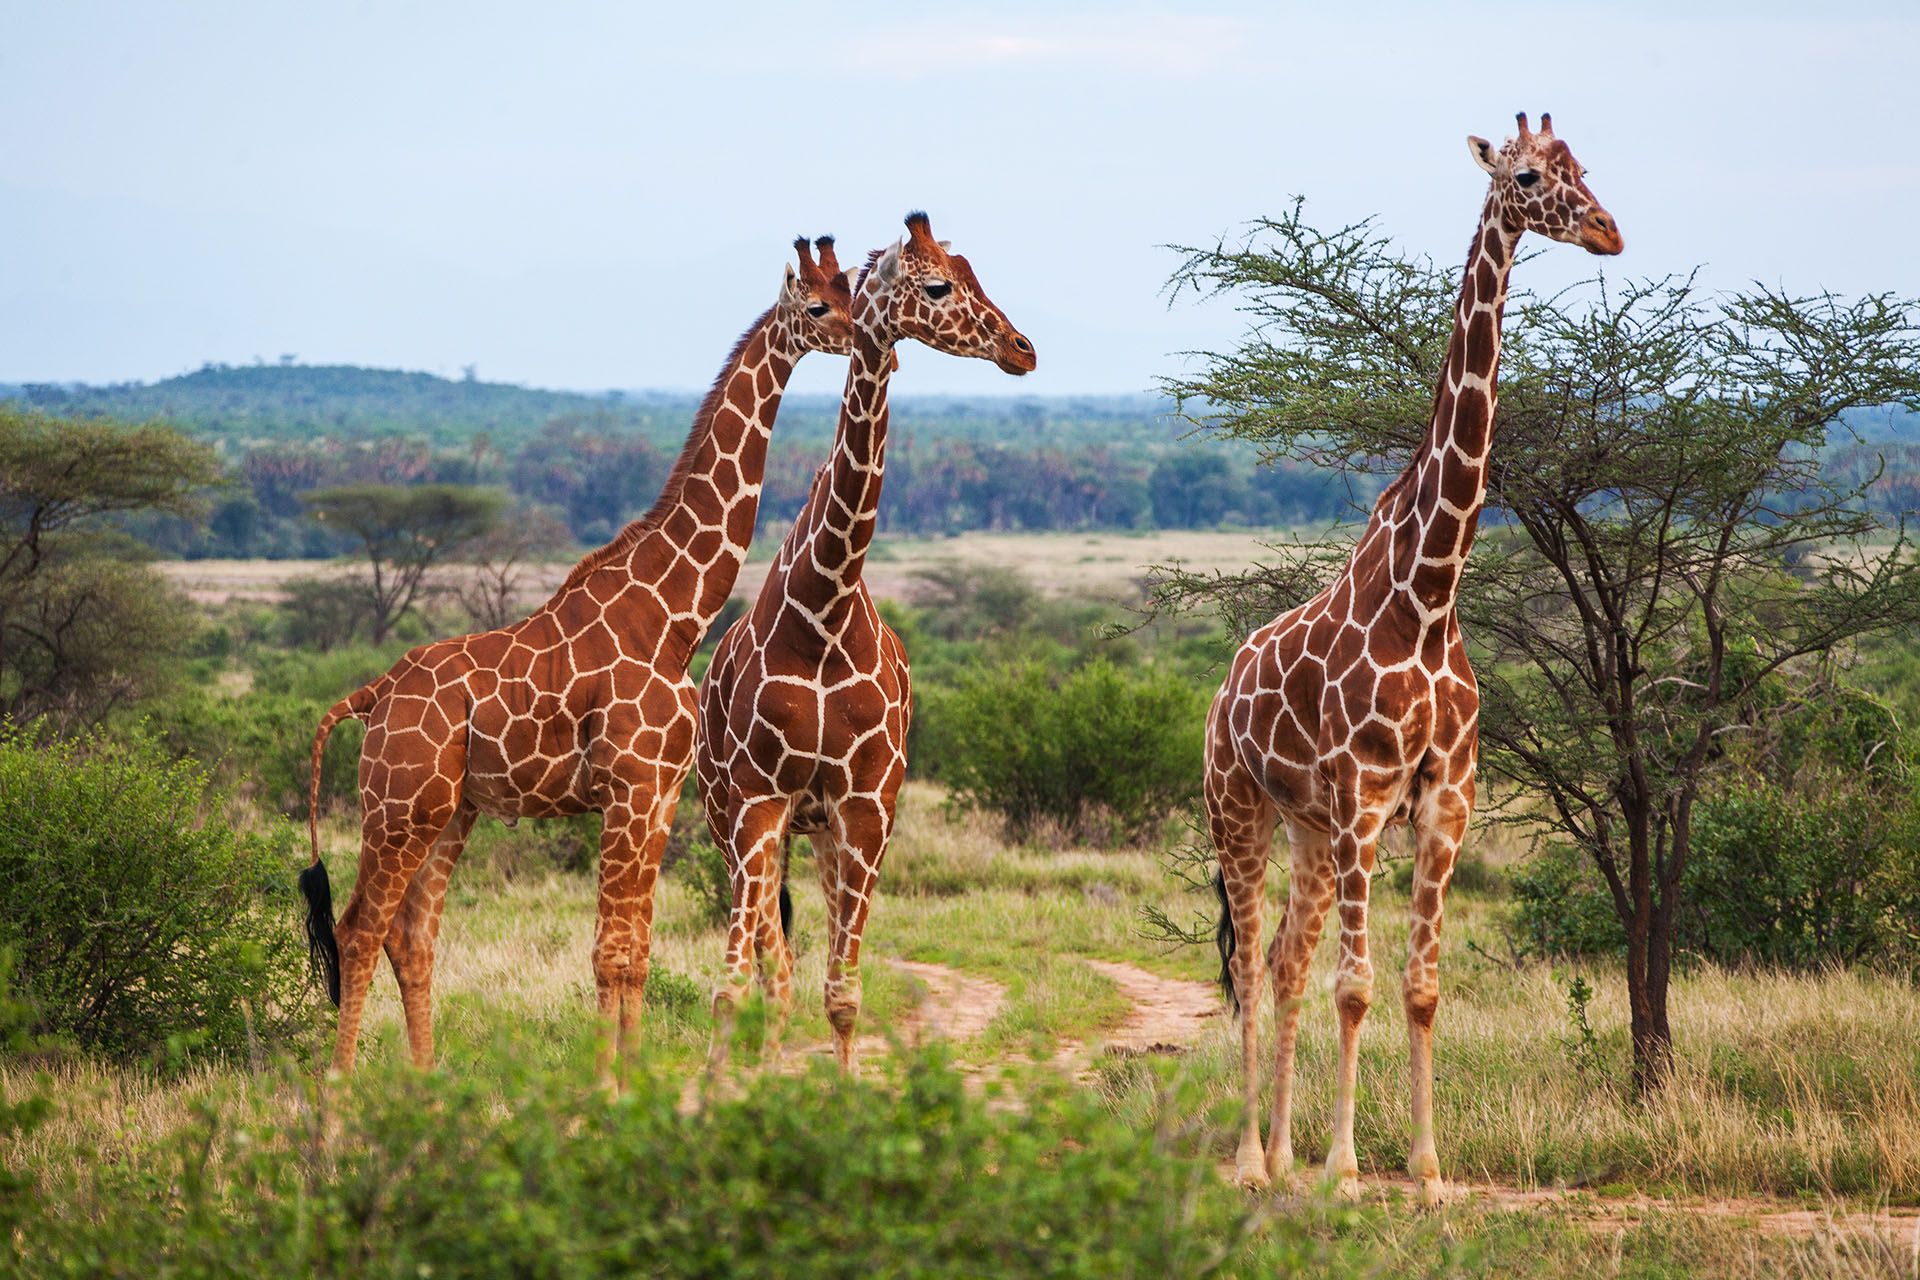 Giraf | Læs om jagten og udbredelsen af giraffen her